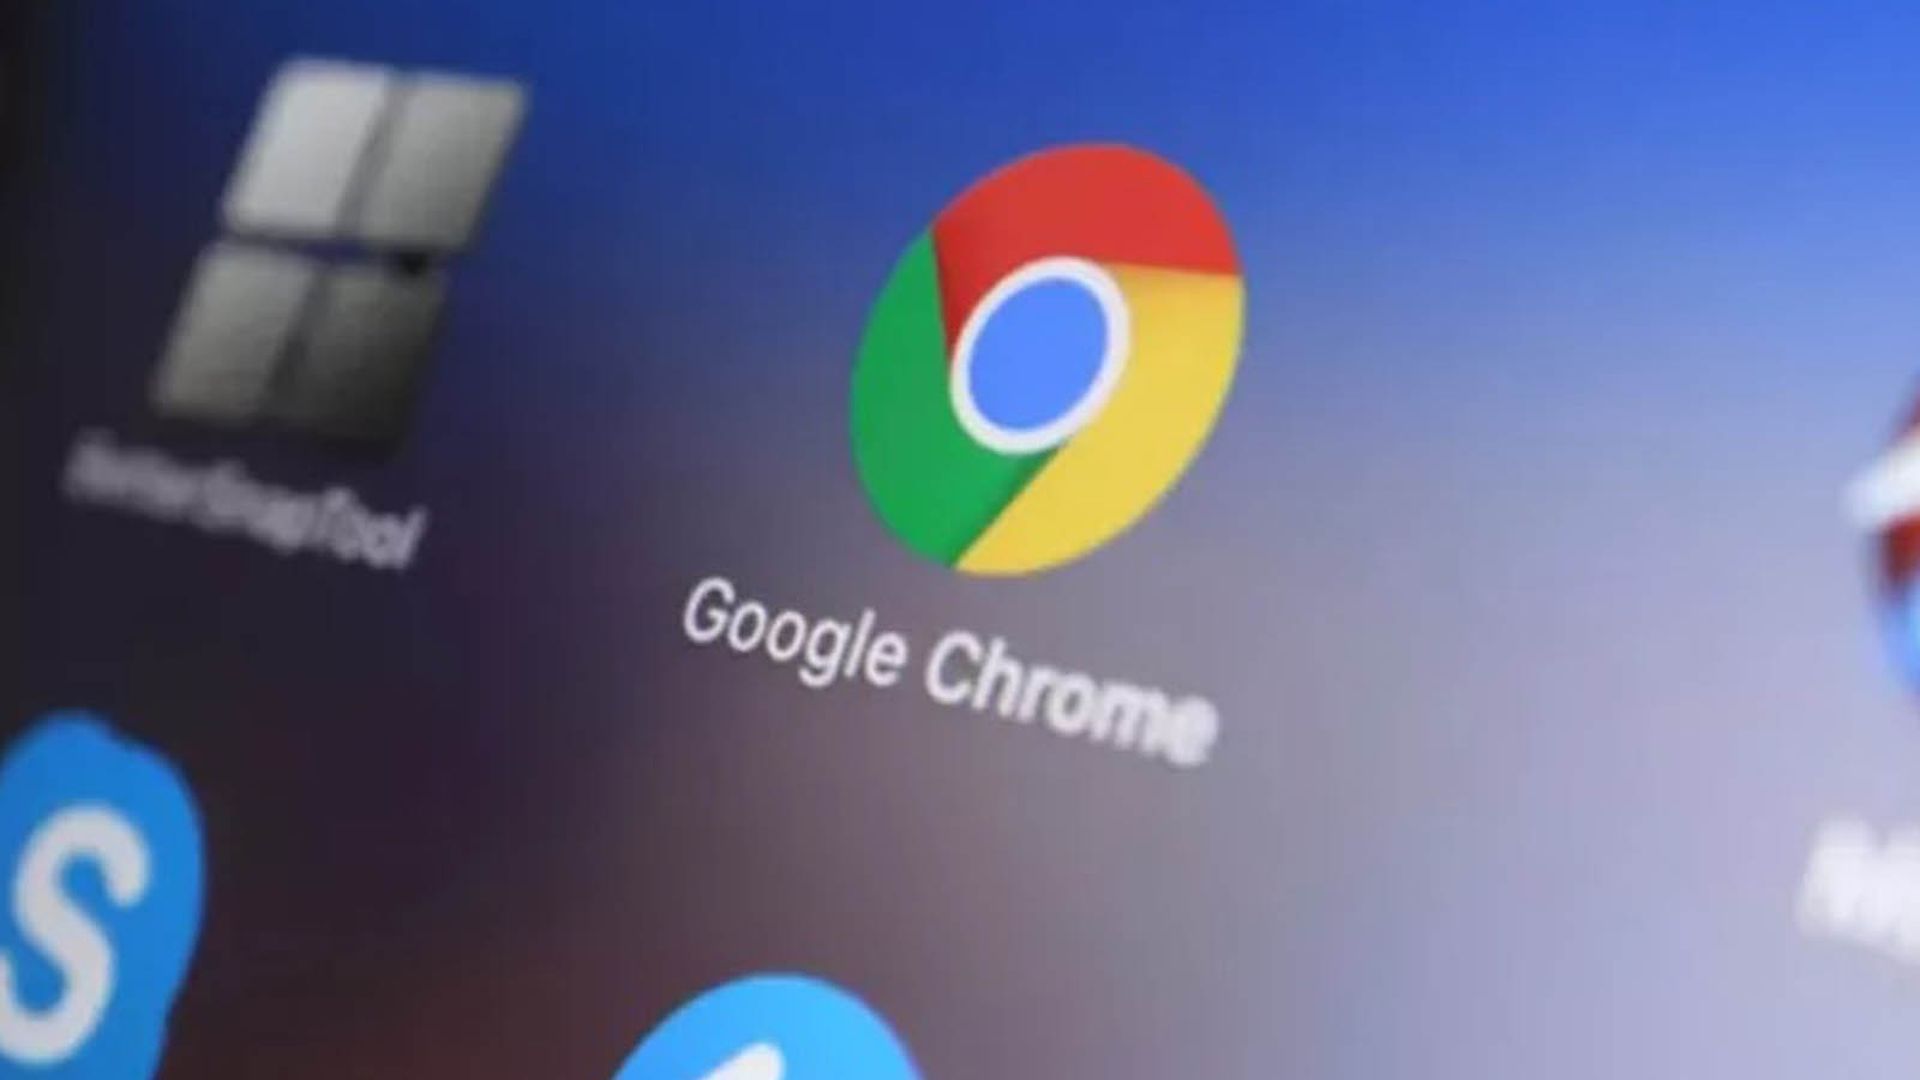 Düzeltildi: Google Chrome hatası: "Amaçlarda güvenilmeyen girişin yetersiz doğrulanması" ile ilgili.